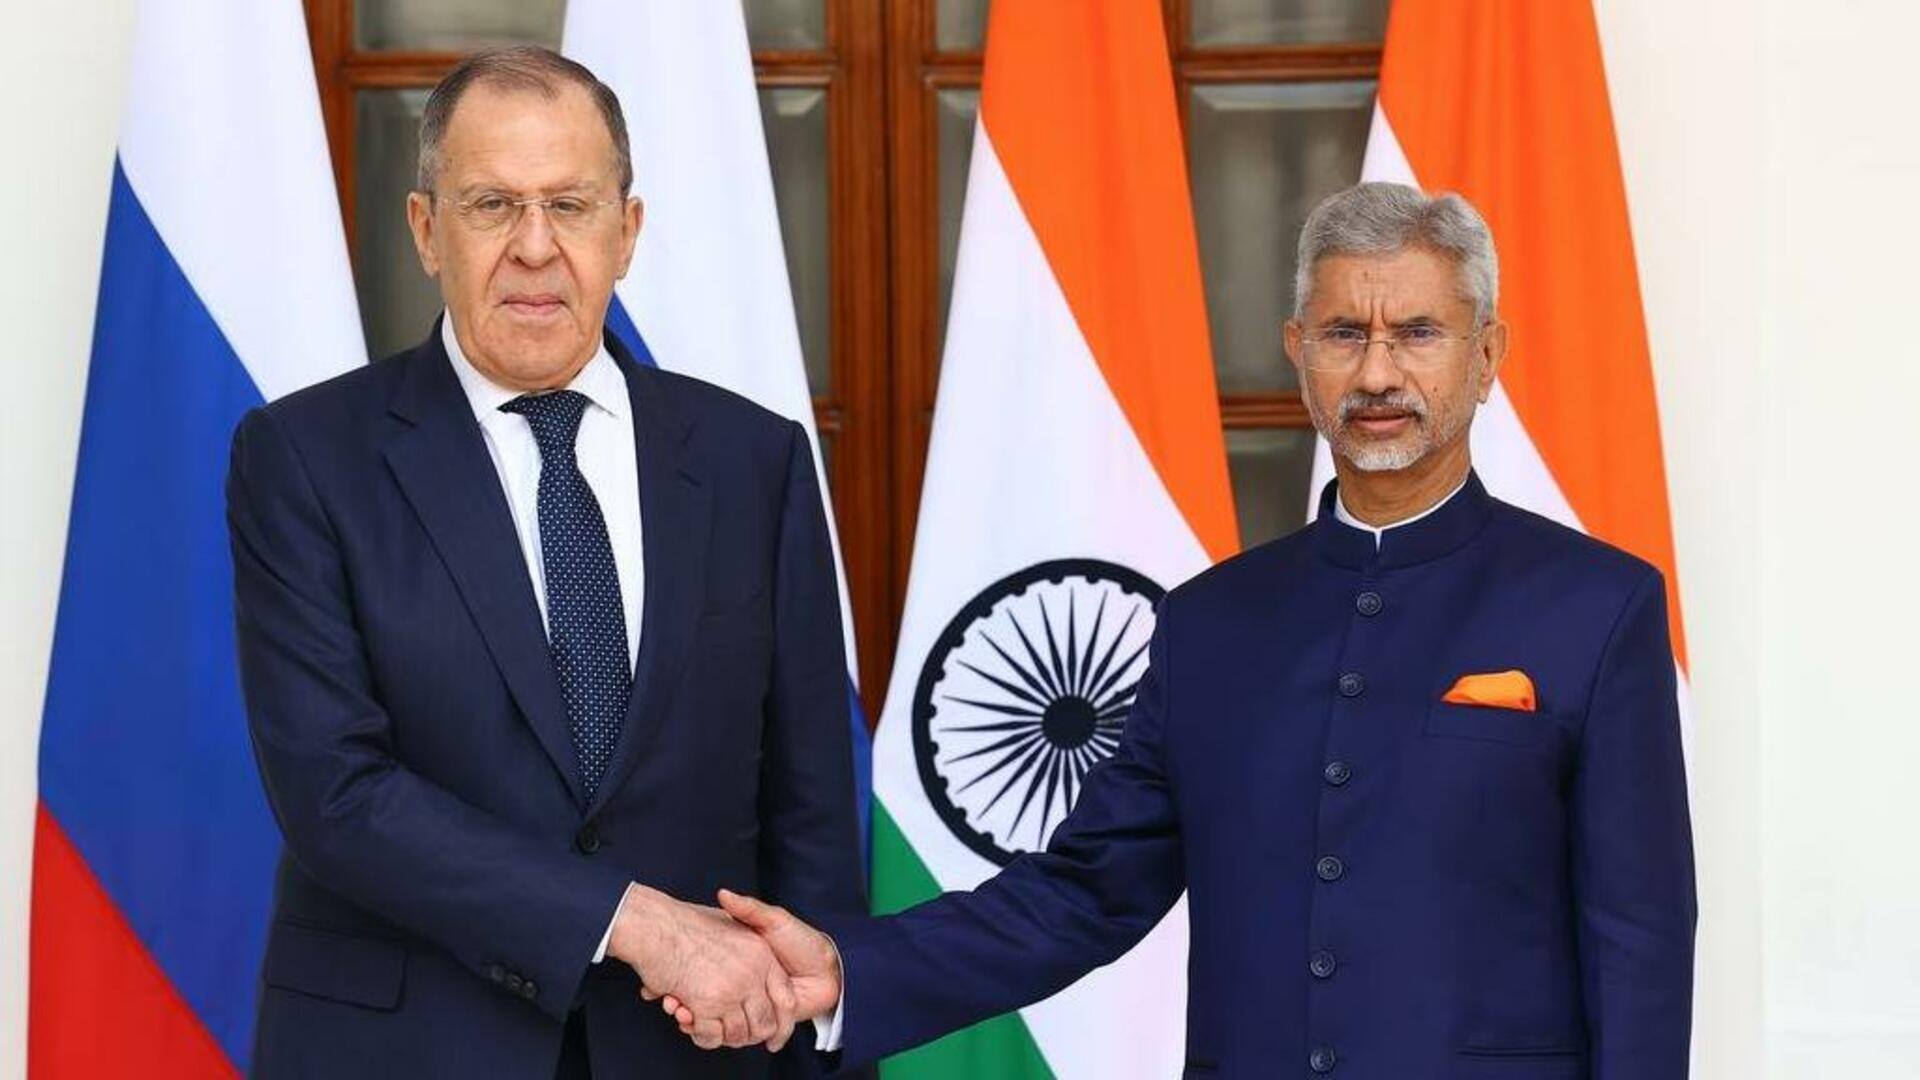 G-20: रूसी विदेश मंत्री ने पश्चिमी देशों पर साधा निशाना, भारत से माफी मांगी